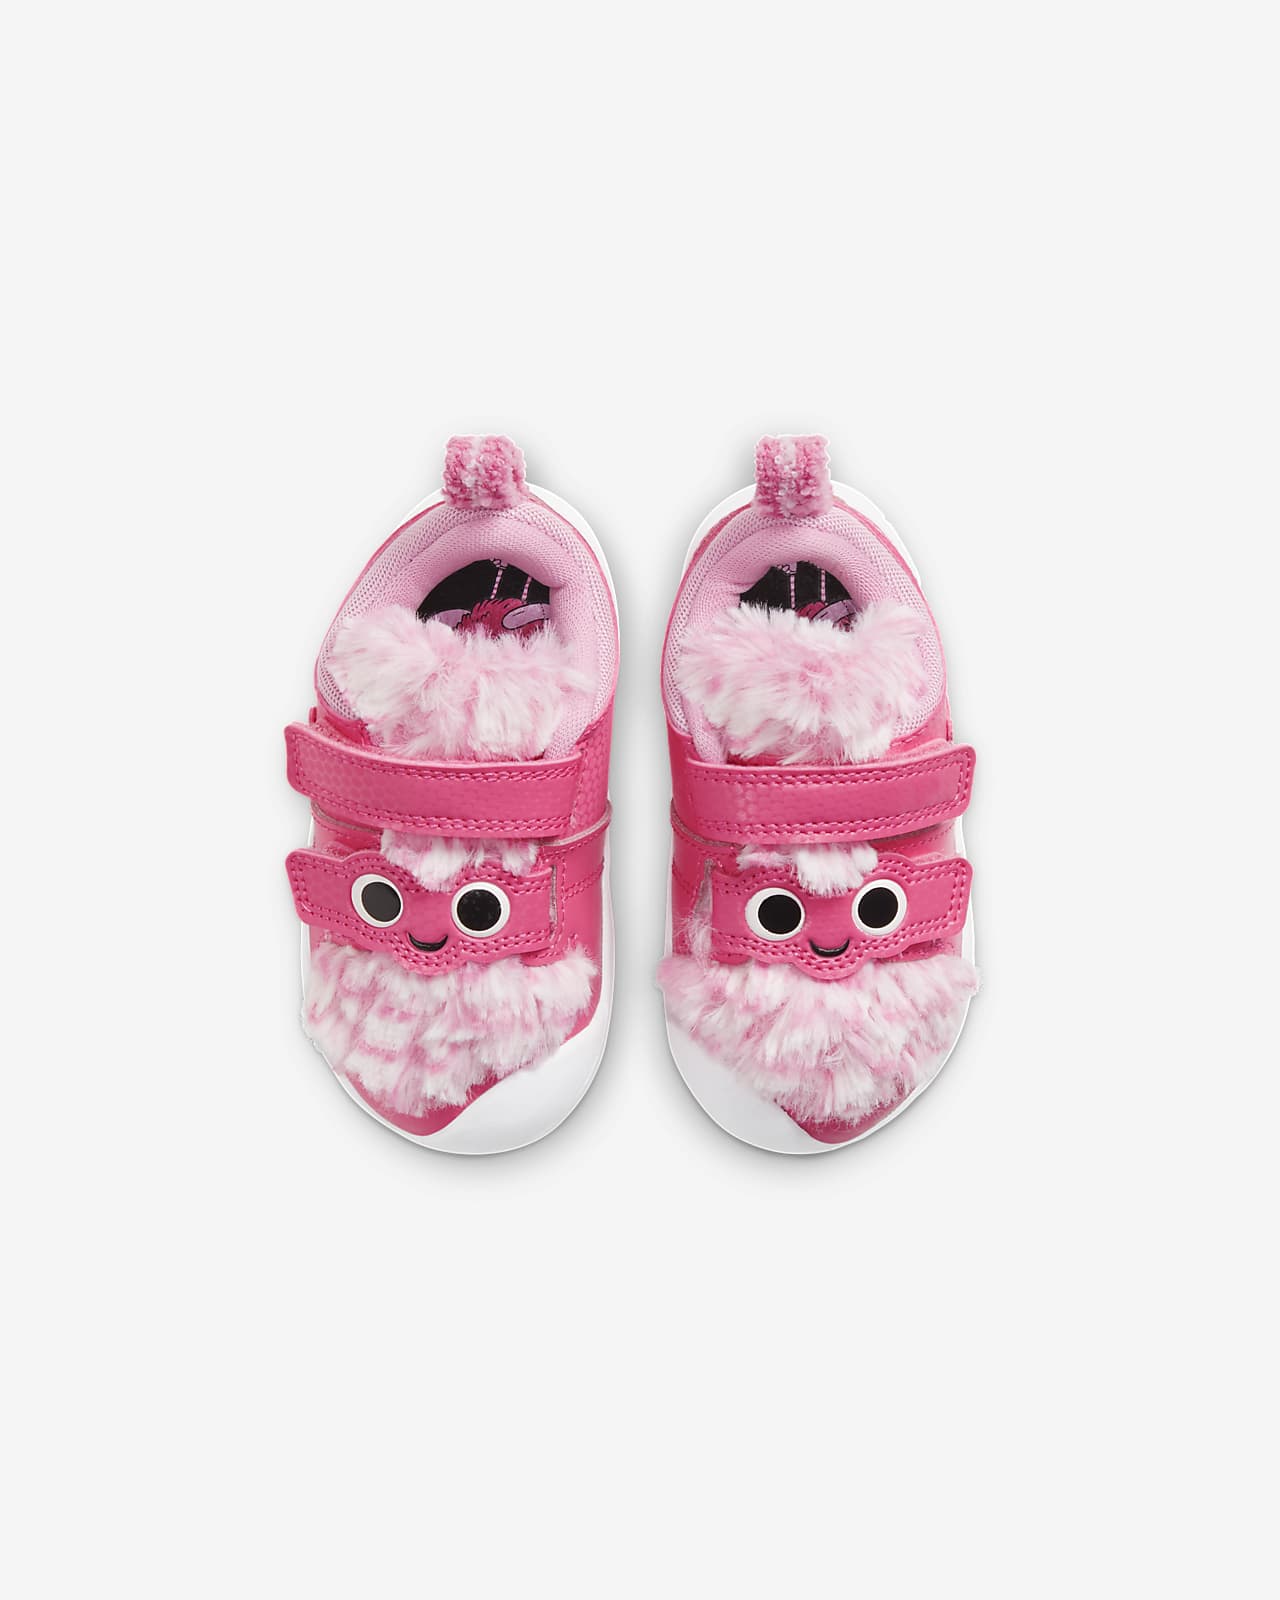 pink toddler nike shoes